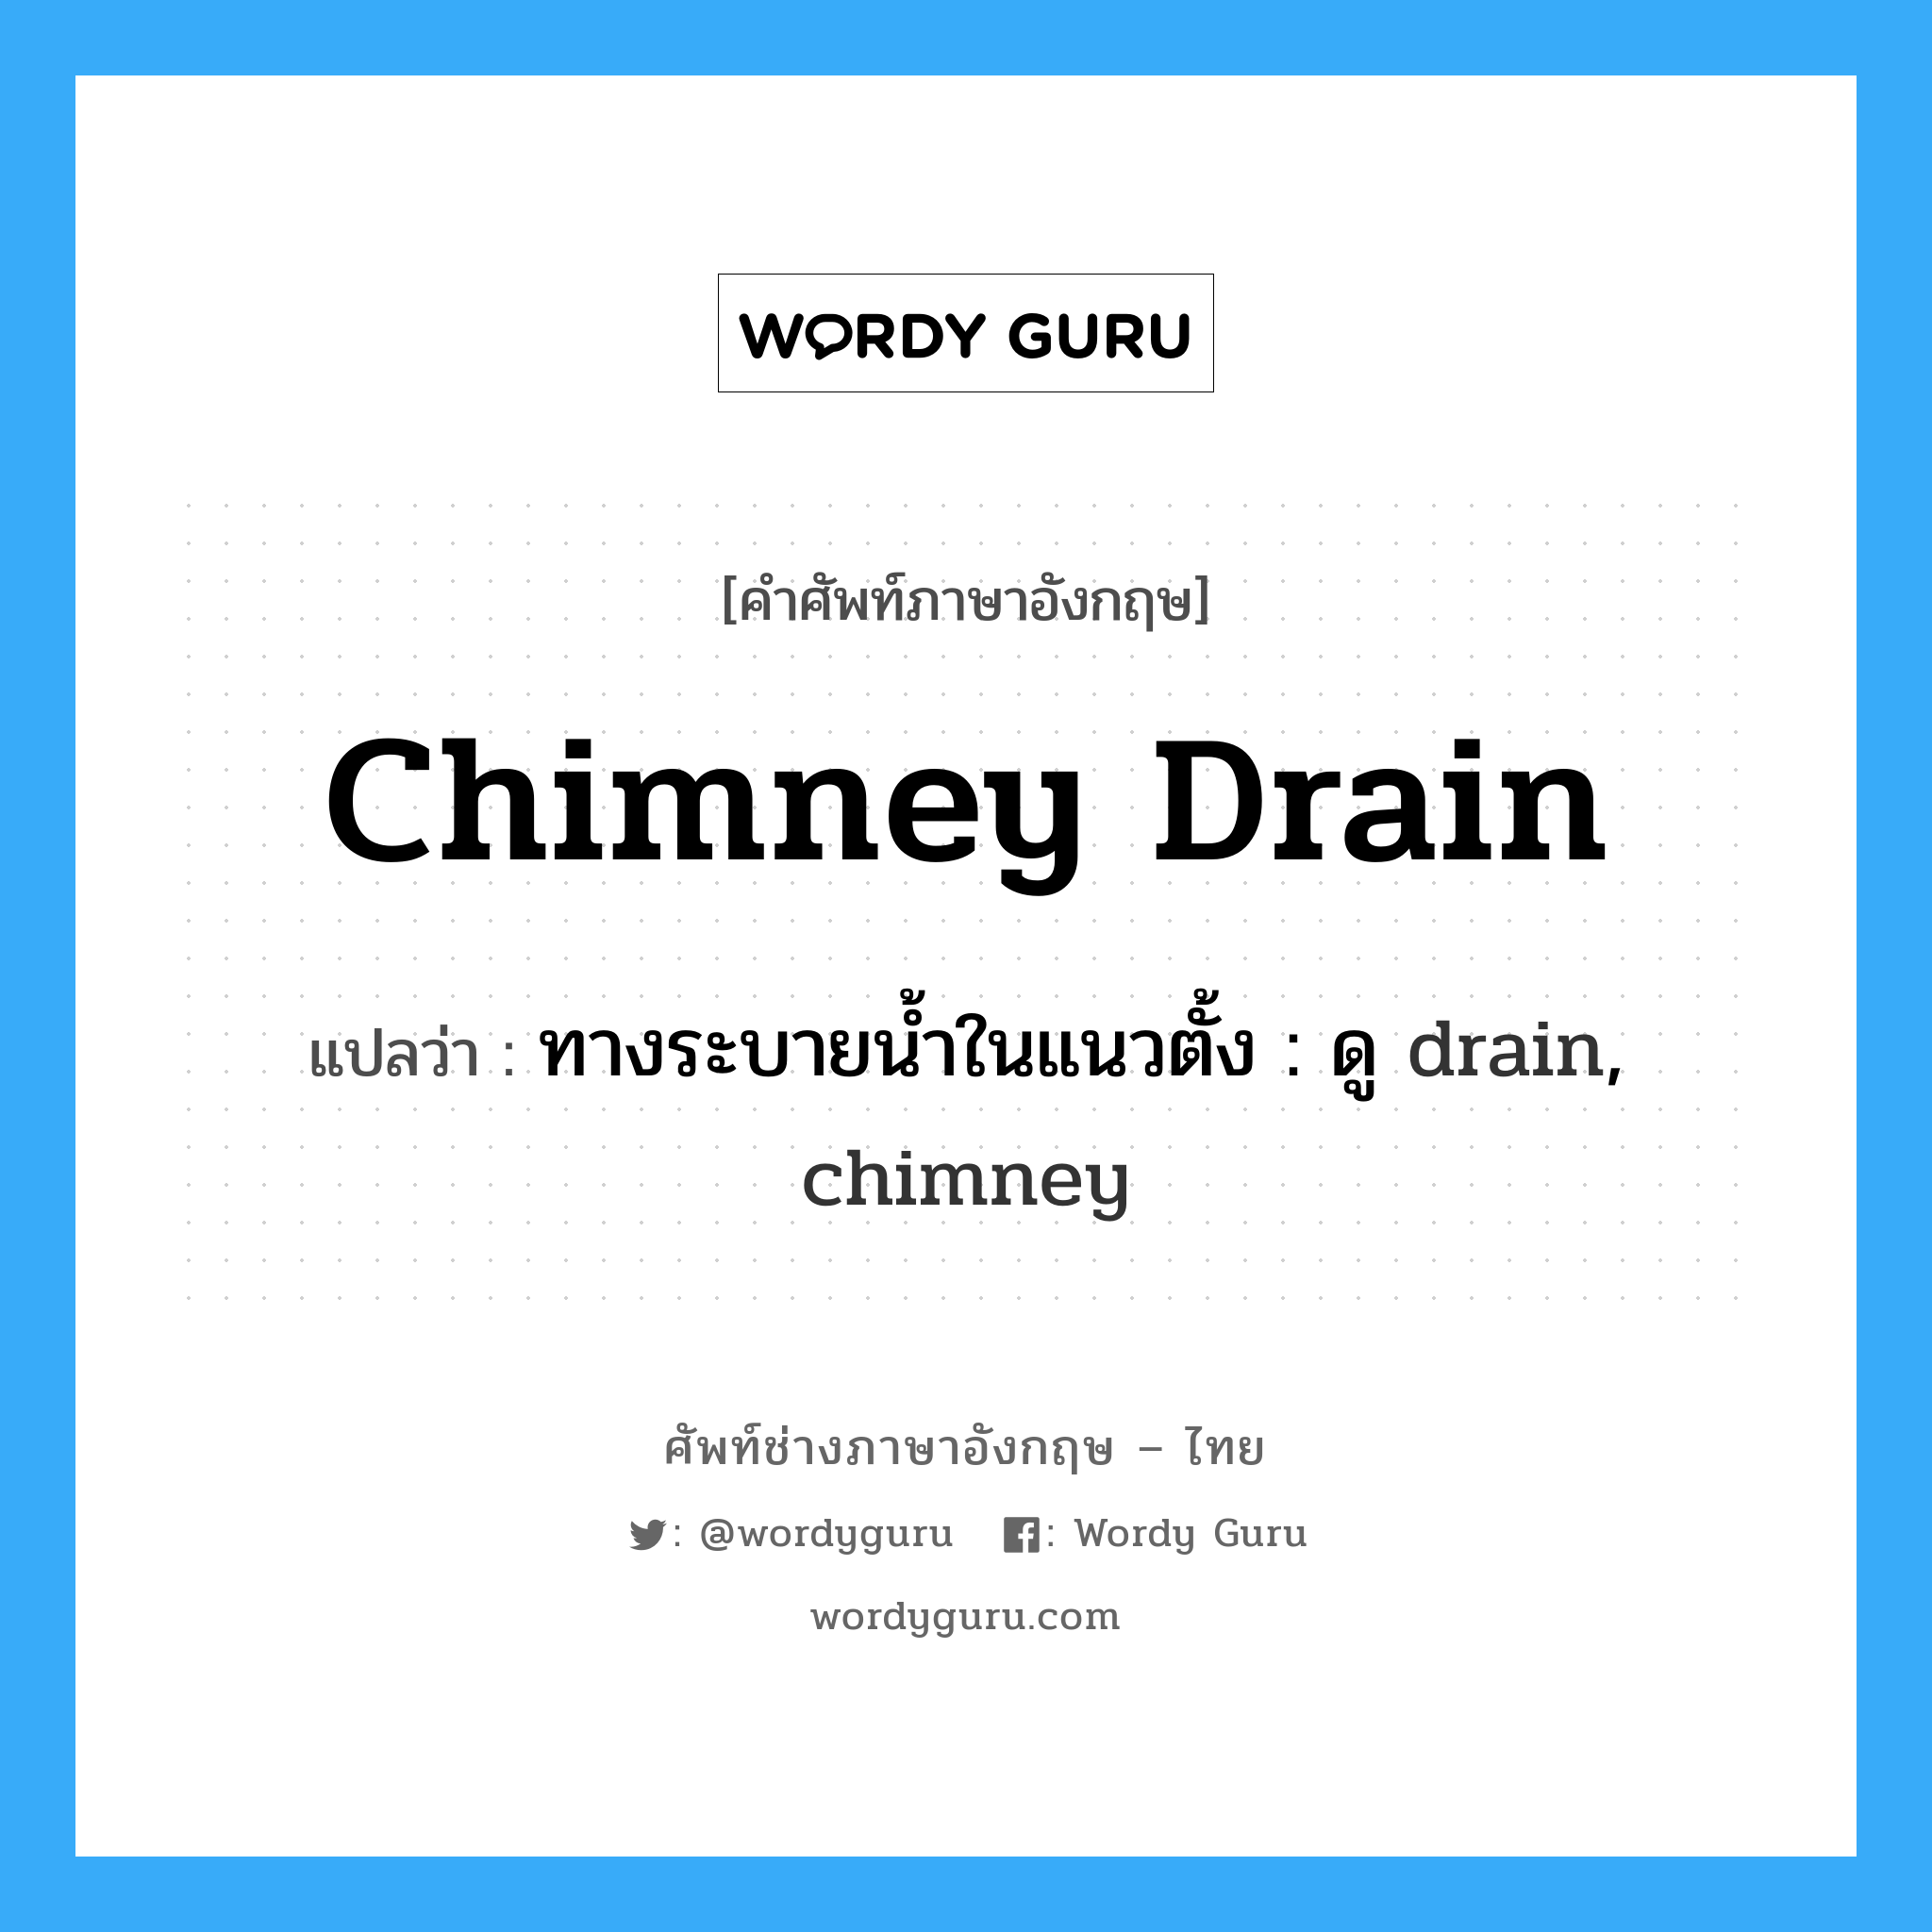 ทางระบายน้ำในแนวตั้ง : ดู drain, chimney ภาษาอังกฤษ?, คำศัพท์ช่างภาษาอังกฤษ - ไทย ทางระบายน้ำในแนวตั้ง : ดู drain, chimney คำศัพท์ภาษาอังกฤษ ทางระบายน้ำในแนวตั้ง : ดู drain, chimney แปลว่า chimney drain